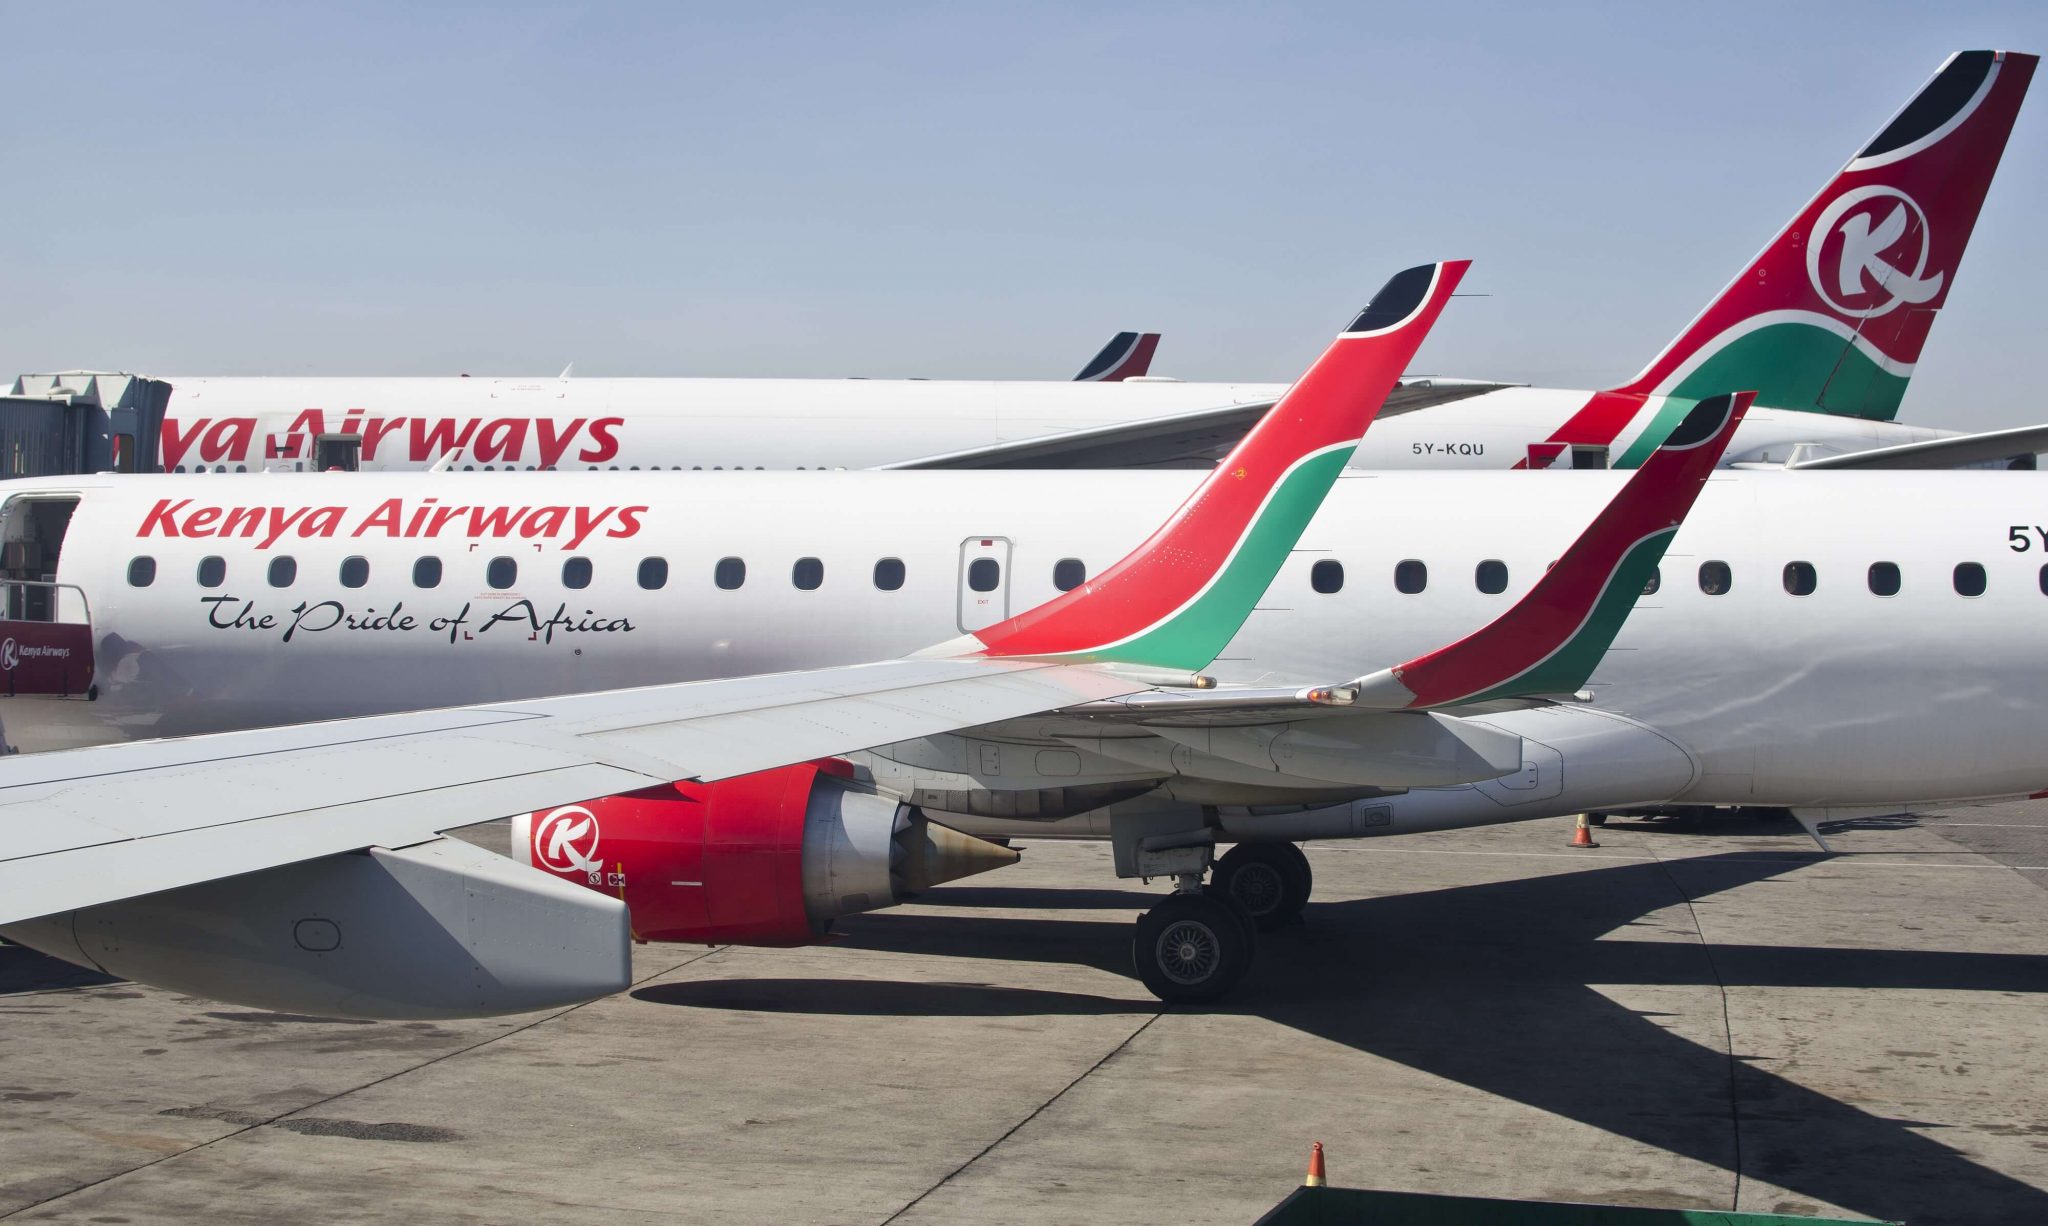 Kenya Airways’ losses double in H1 2019 results